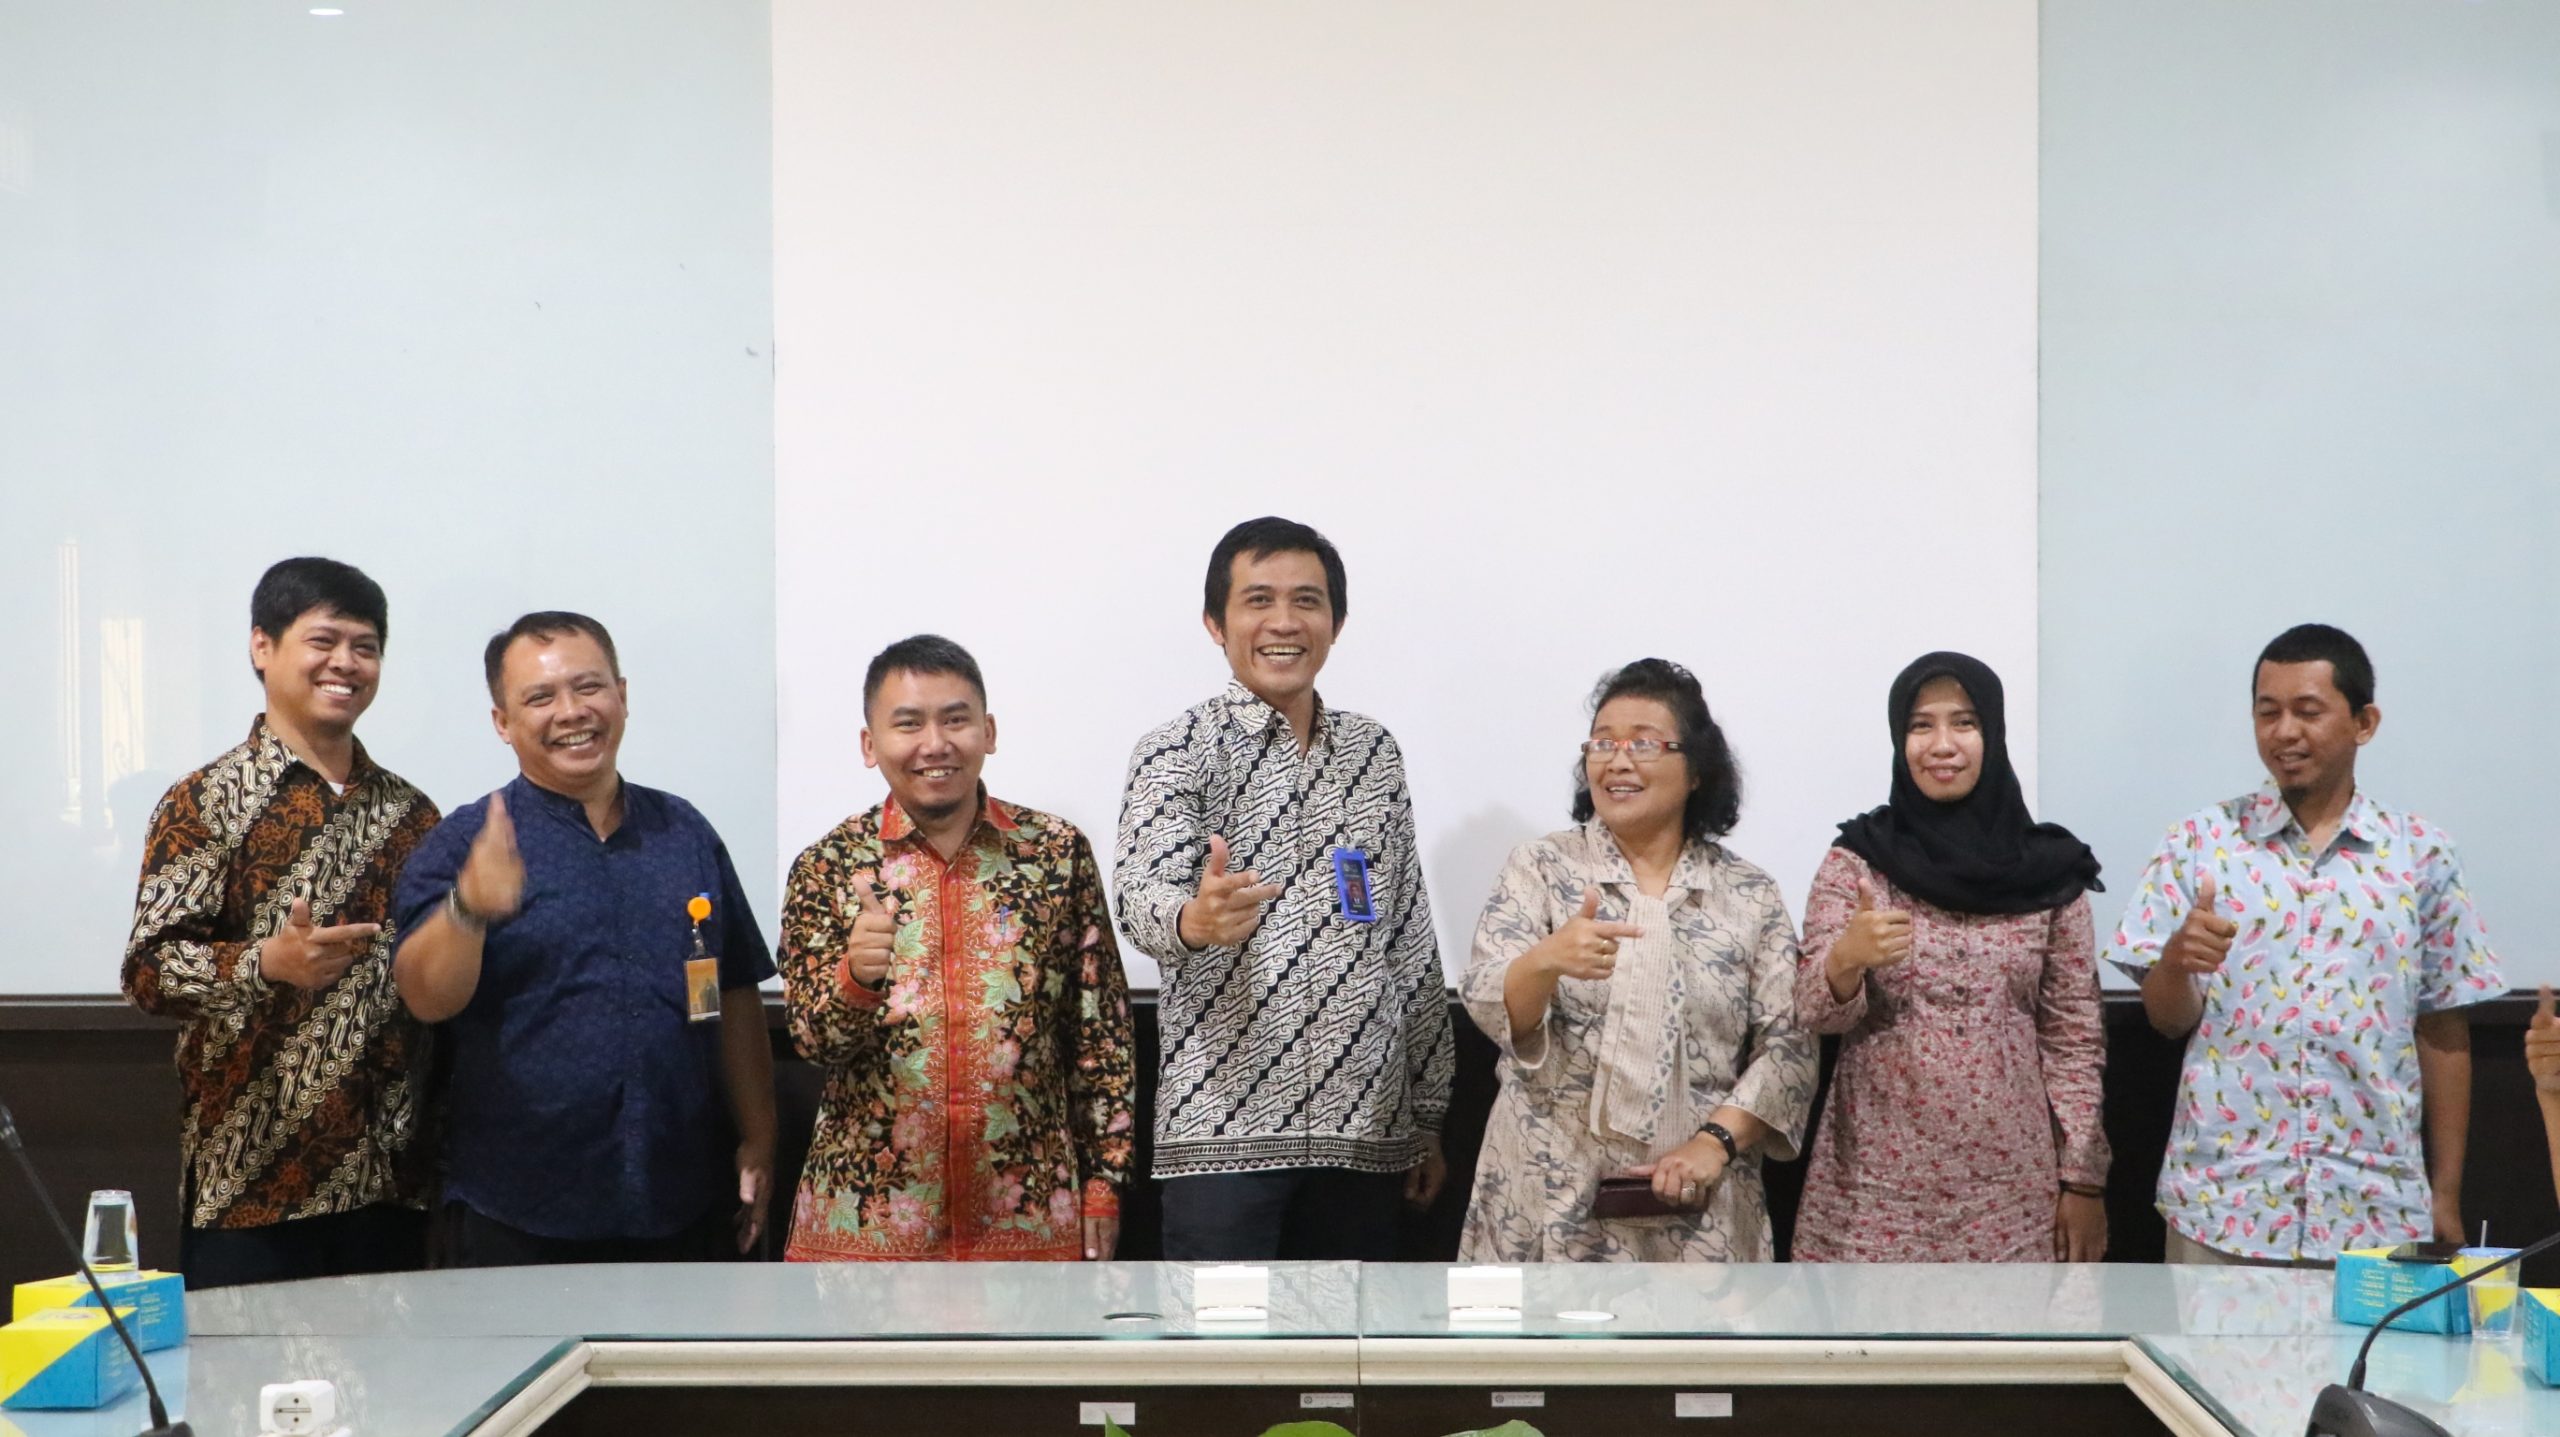 Kunjungan Studi Banding dari Universitas Negeri Makassar di Fakultas Teknik UM